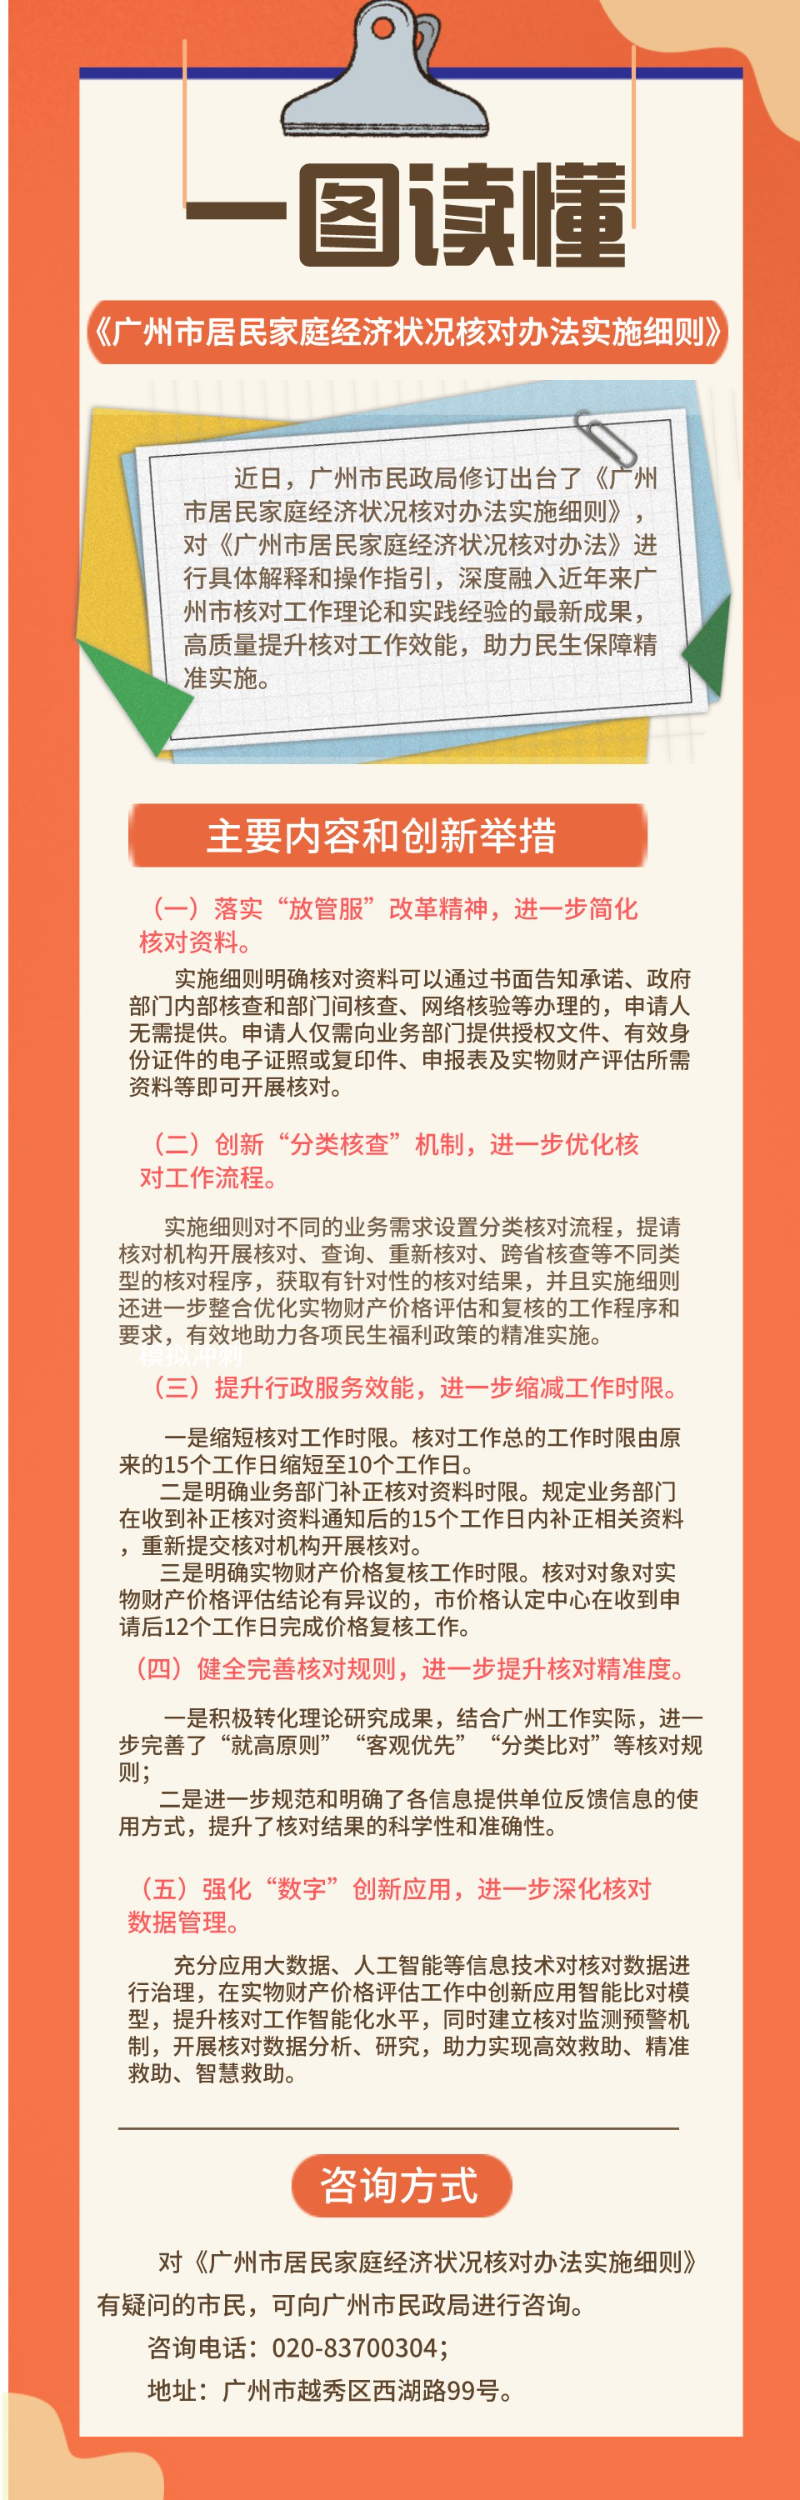 （校验后以此件为准）一图读懂-《广州市居民家庭经济状况核对办法实施细则》.jpeg